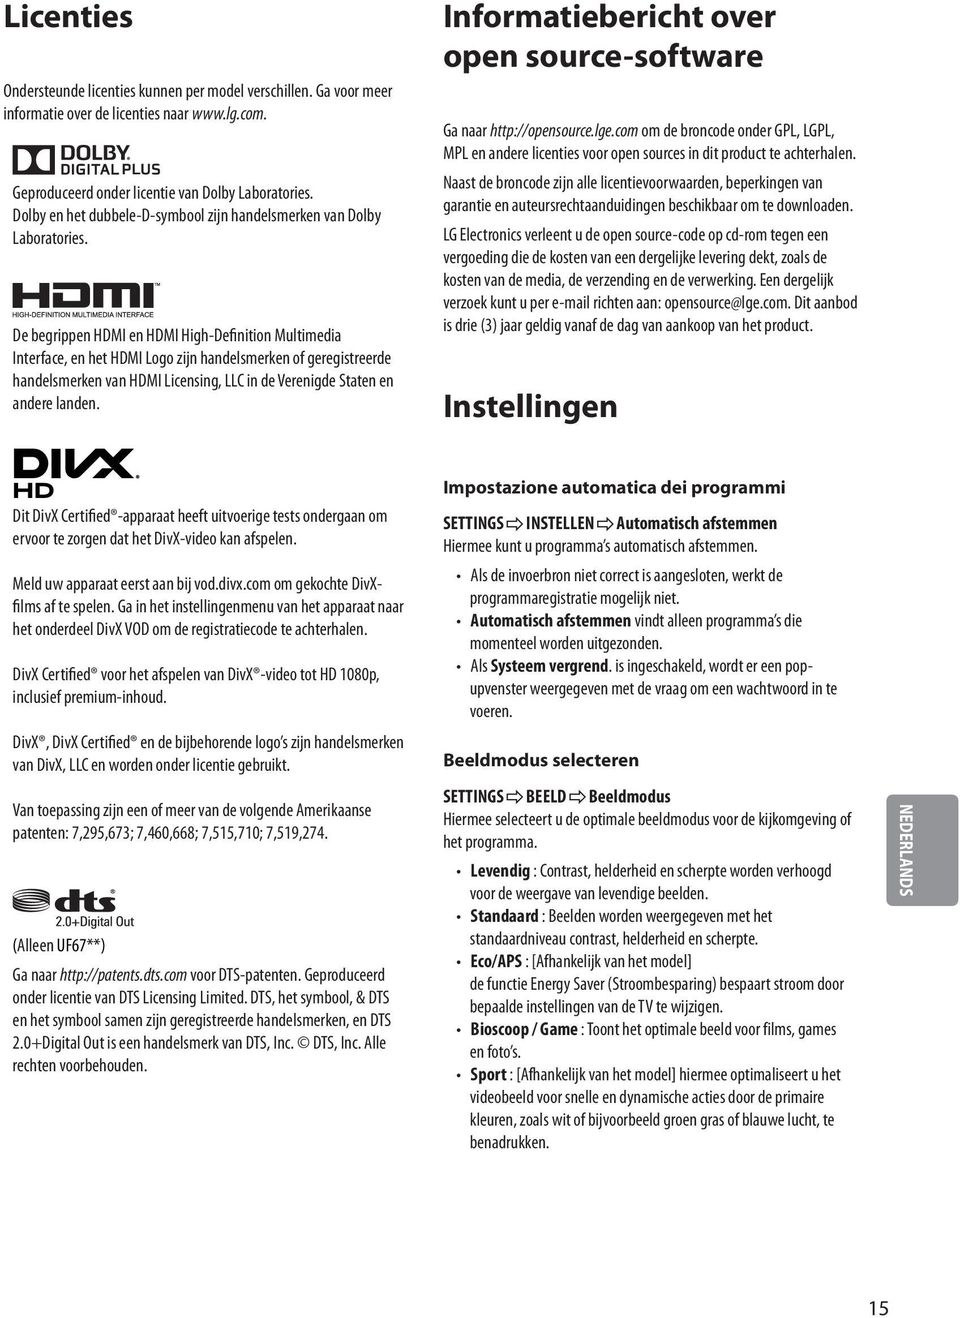 De begrippen HDMI en HDMI High-Definition Multimedia Interface, en het HDMI Logo zijn handelsmerken of geregistreerde handelsmerken van HDMI Licensing, LLC in de Verenigde Staten en andere landen.